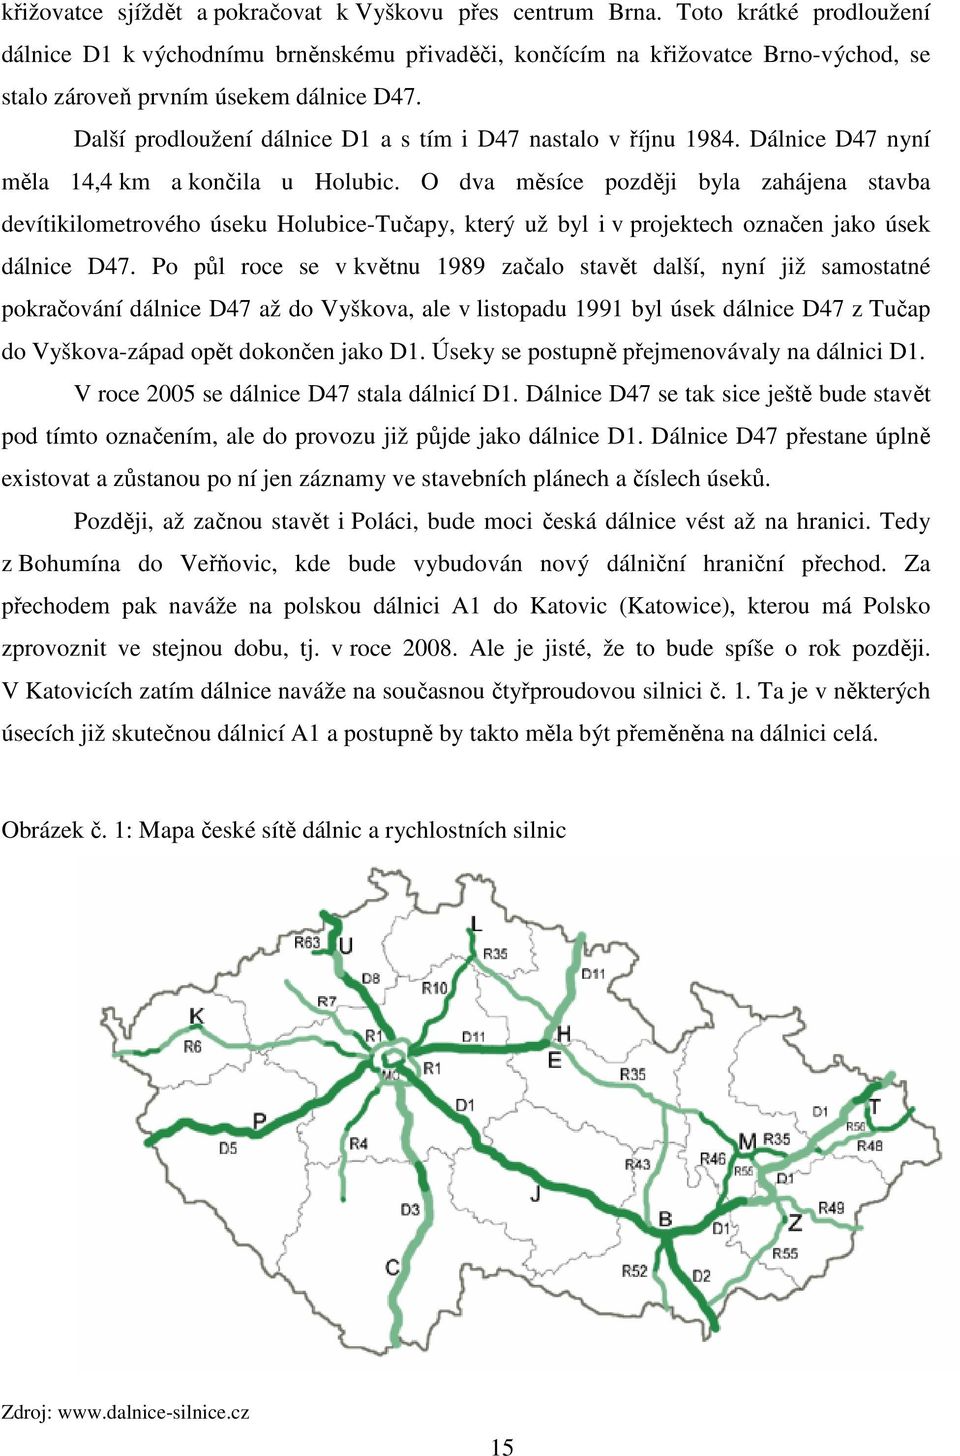 Další prodloužení dálnice D1 a s tím i D47 nastalo v říjnu 1984. Dálnice D47 nyní měla 14,4 km a končila u Holubic.